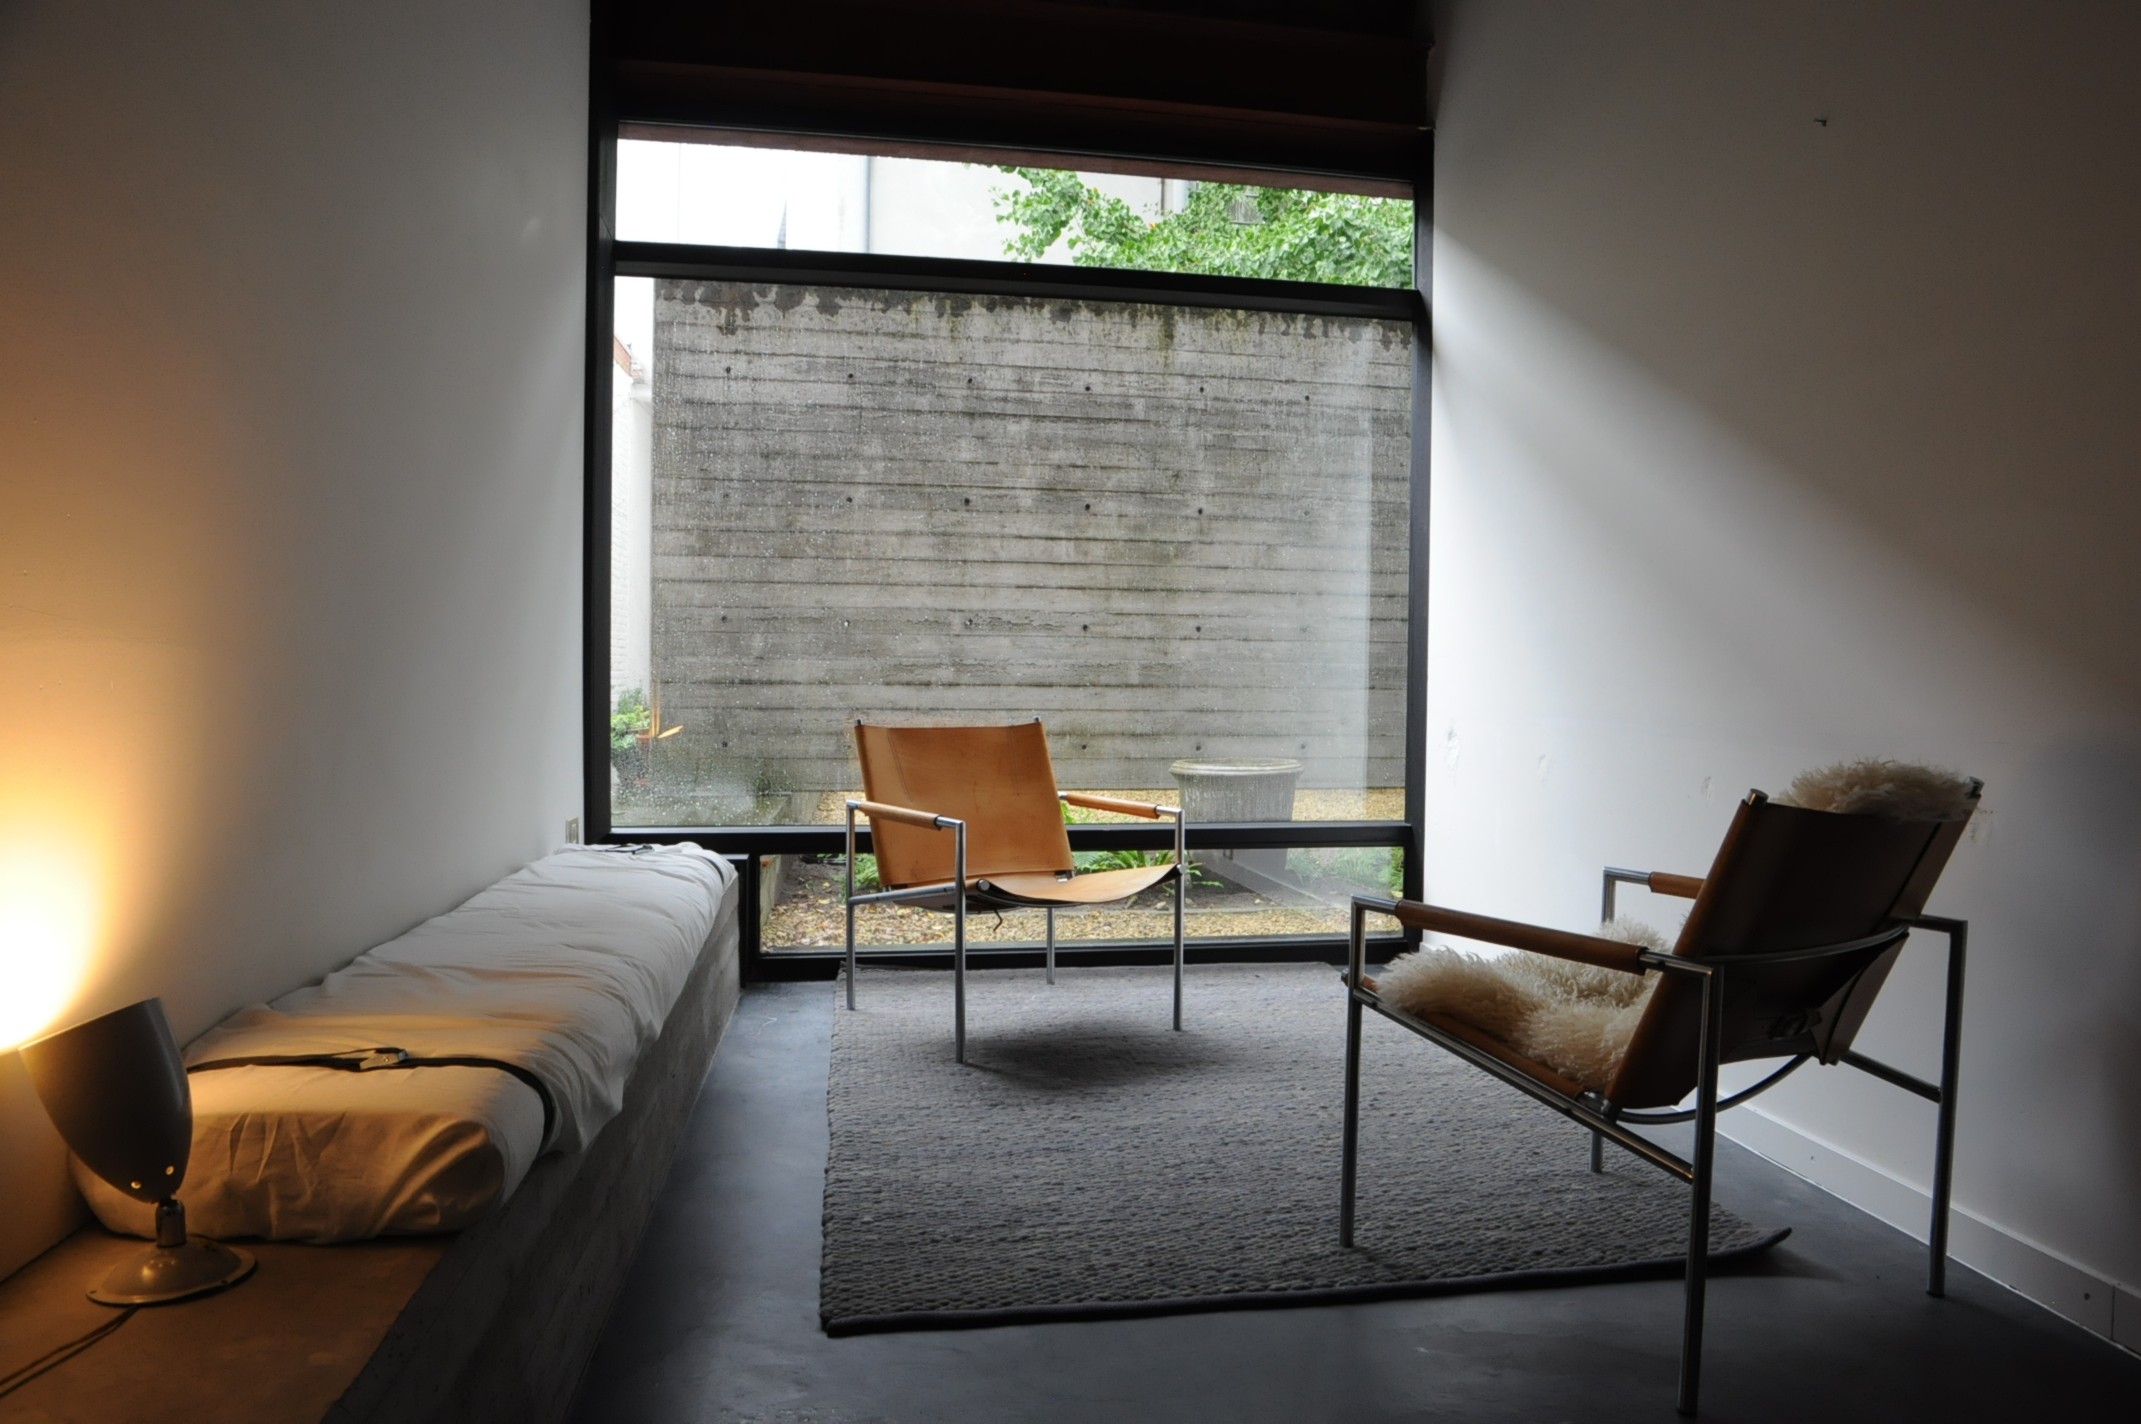 En studio met een houten vloer, zigzag patroon. Enkele donkergroene, stijlvolle stoelen voor een grote raampartij.